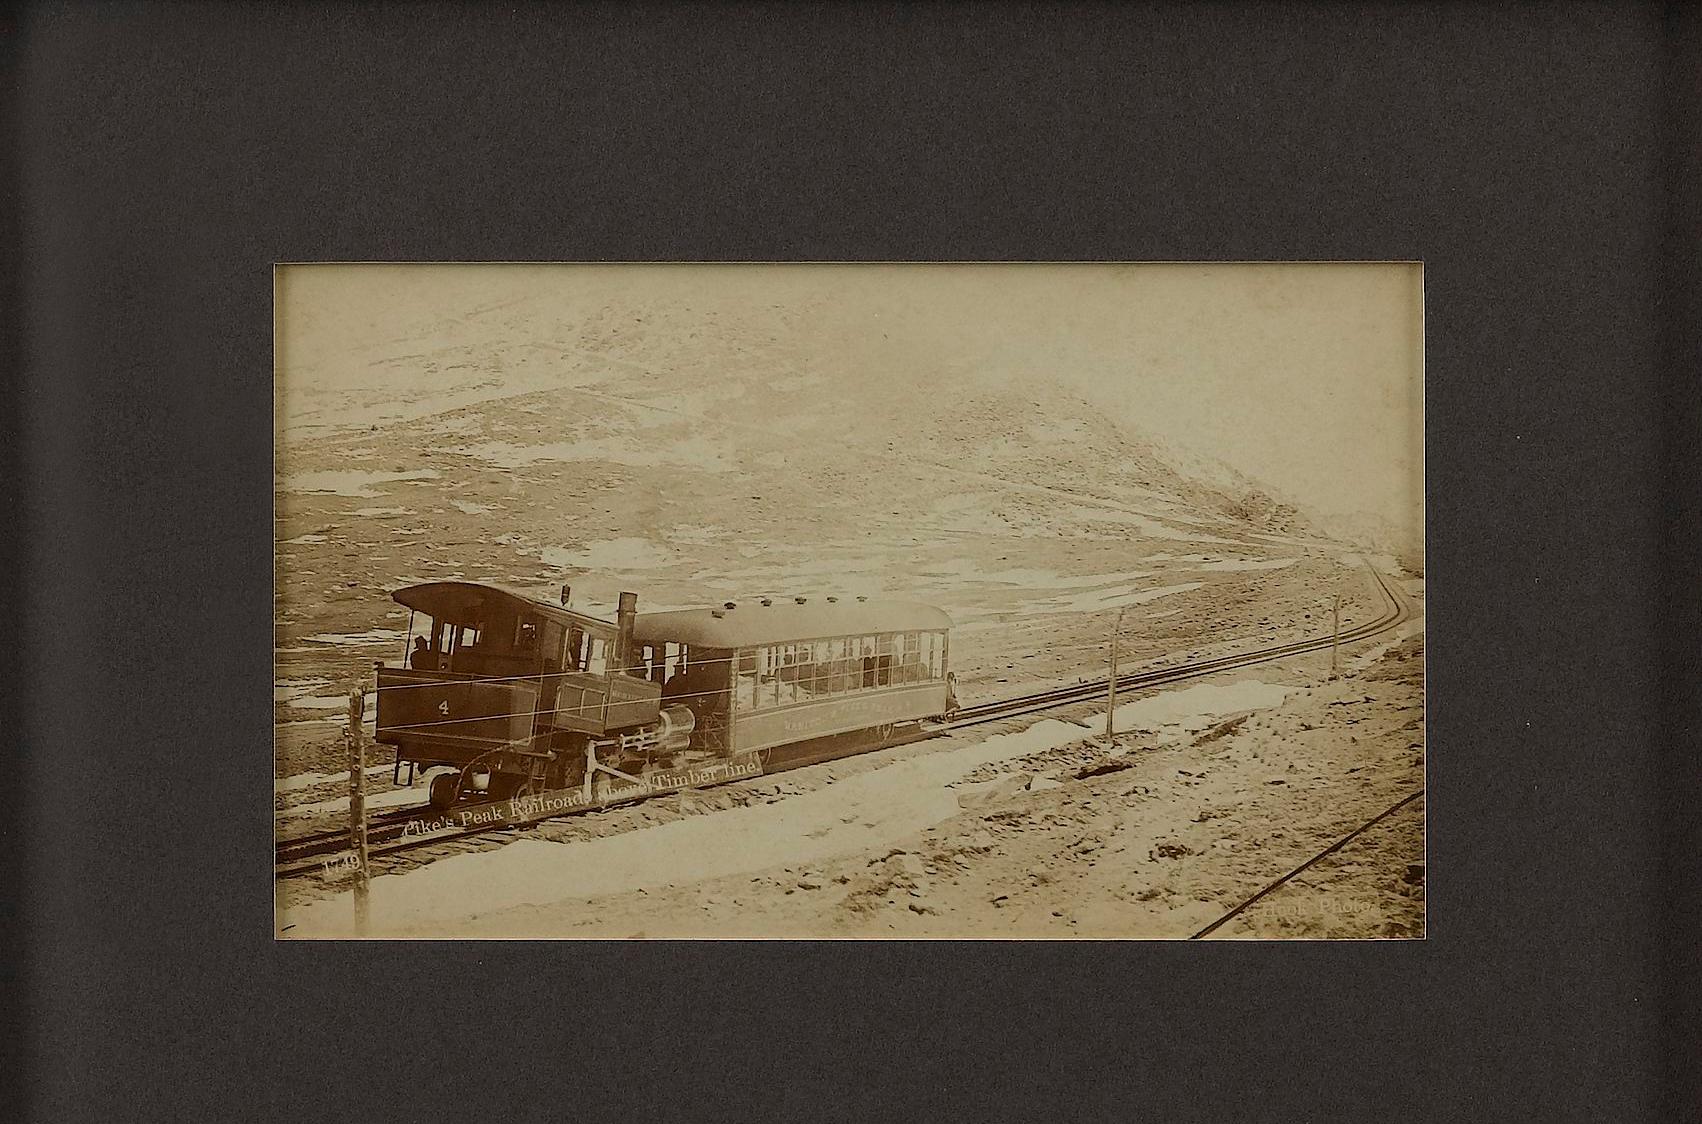 Voici un collage de trois photographies anciennes de la Manitou and Pikes Peak Railway, dans le Colorado, datant des années 1890. Les photographies aux tons sépia ont été publiées par W.E. Hook View, Stationery and Book Company. Les photographies